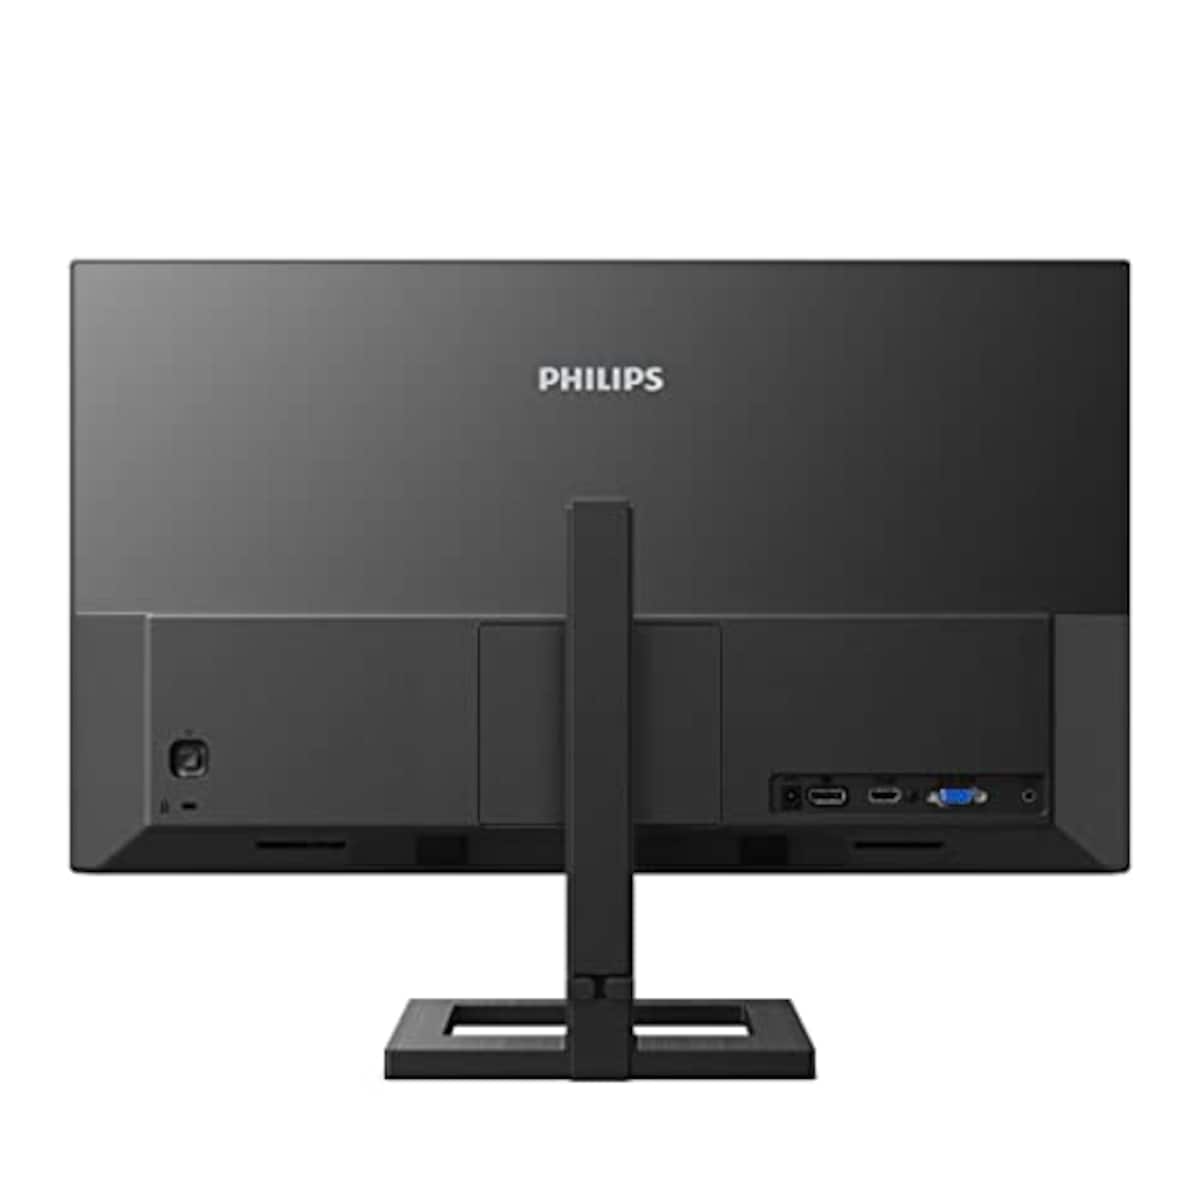  PHILIPS モニターディスプレイ 242E2FE/11 (23.8インチ/IPS Technology/FHD/5年保証/HDMI/D-Sub/DVI-D/フレームレス/昇降・高さ調節)画像2 